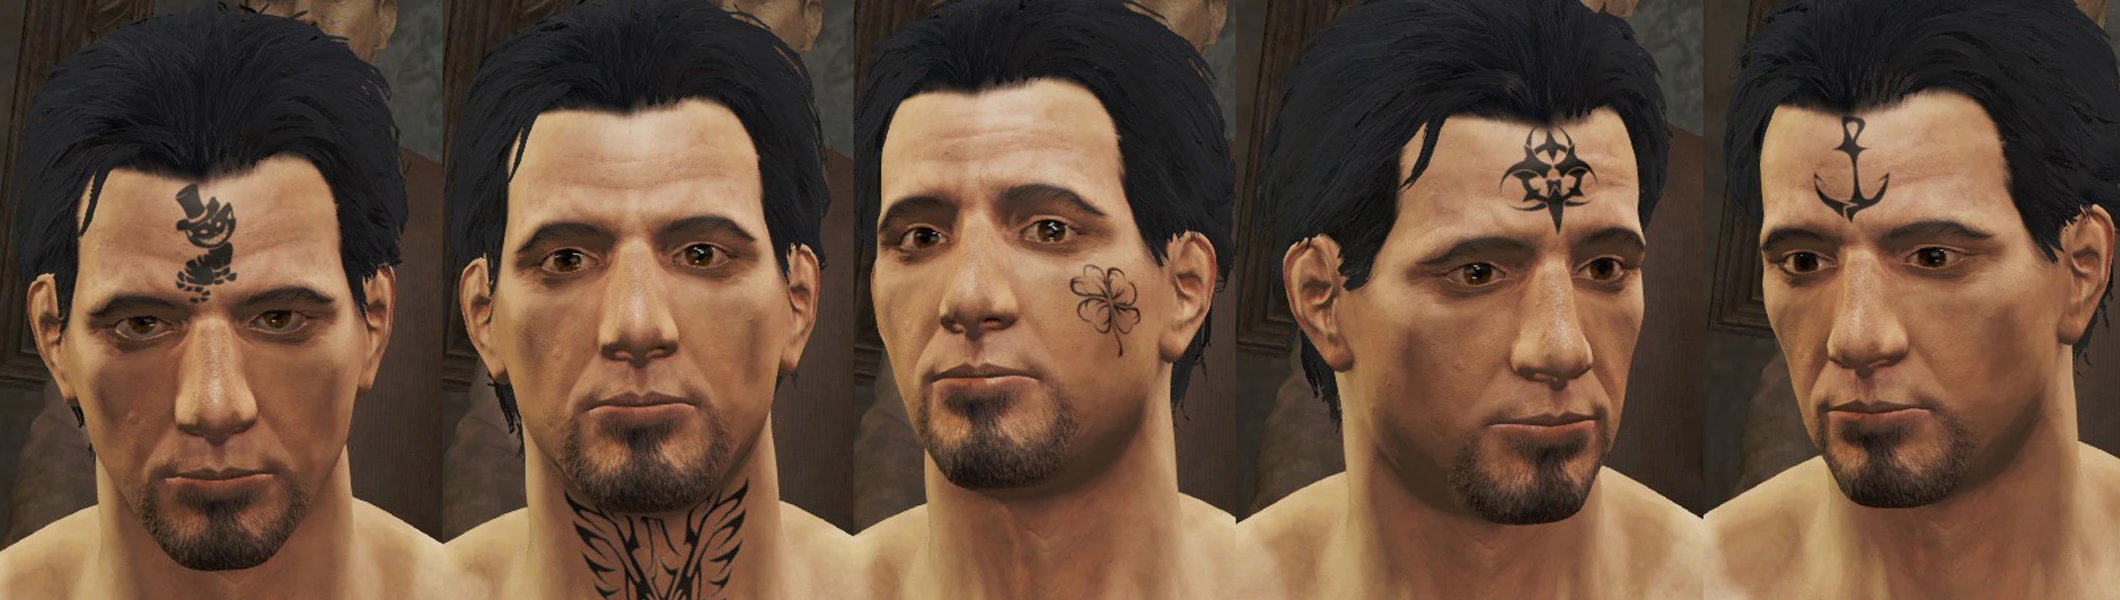 Fallout 4 татуировки на лицо (120) фото